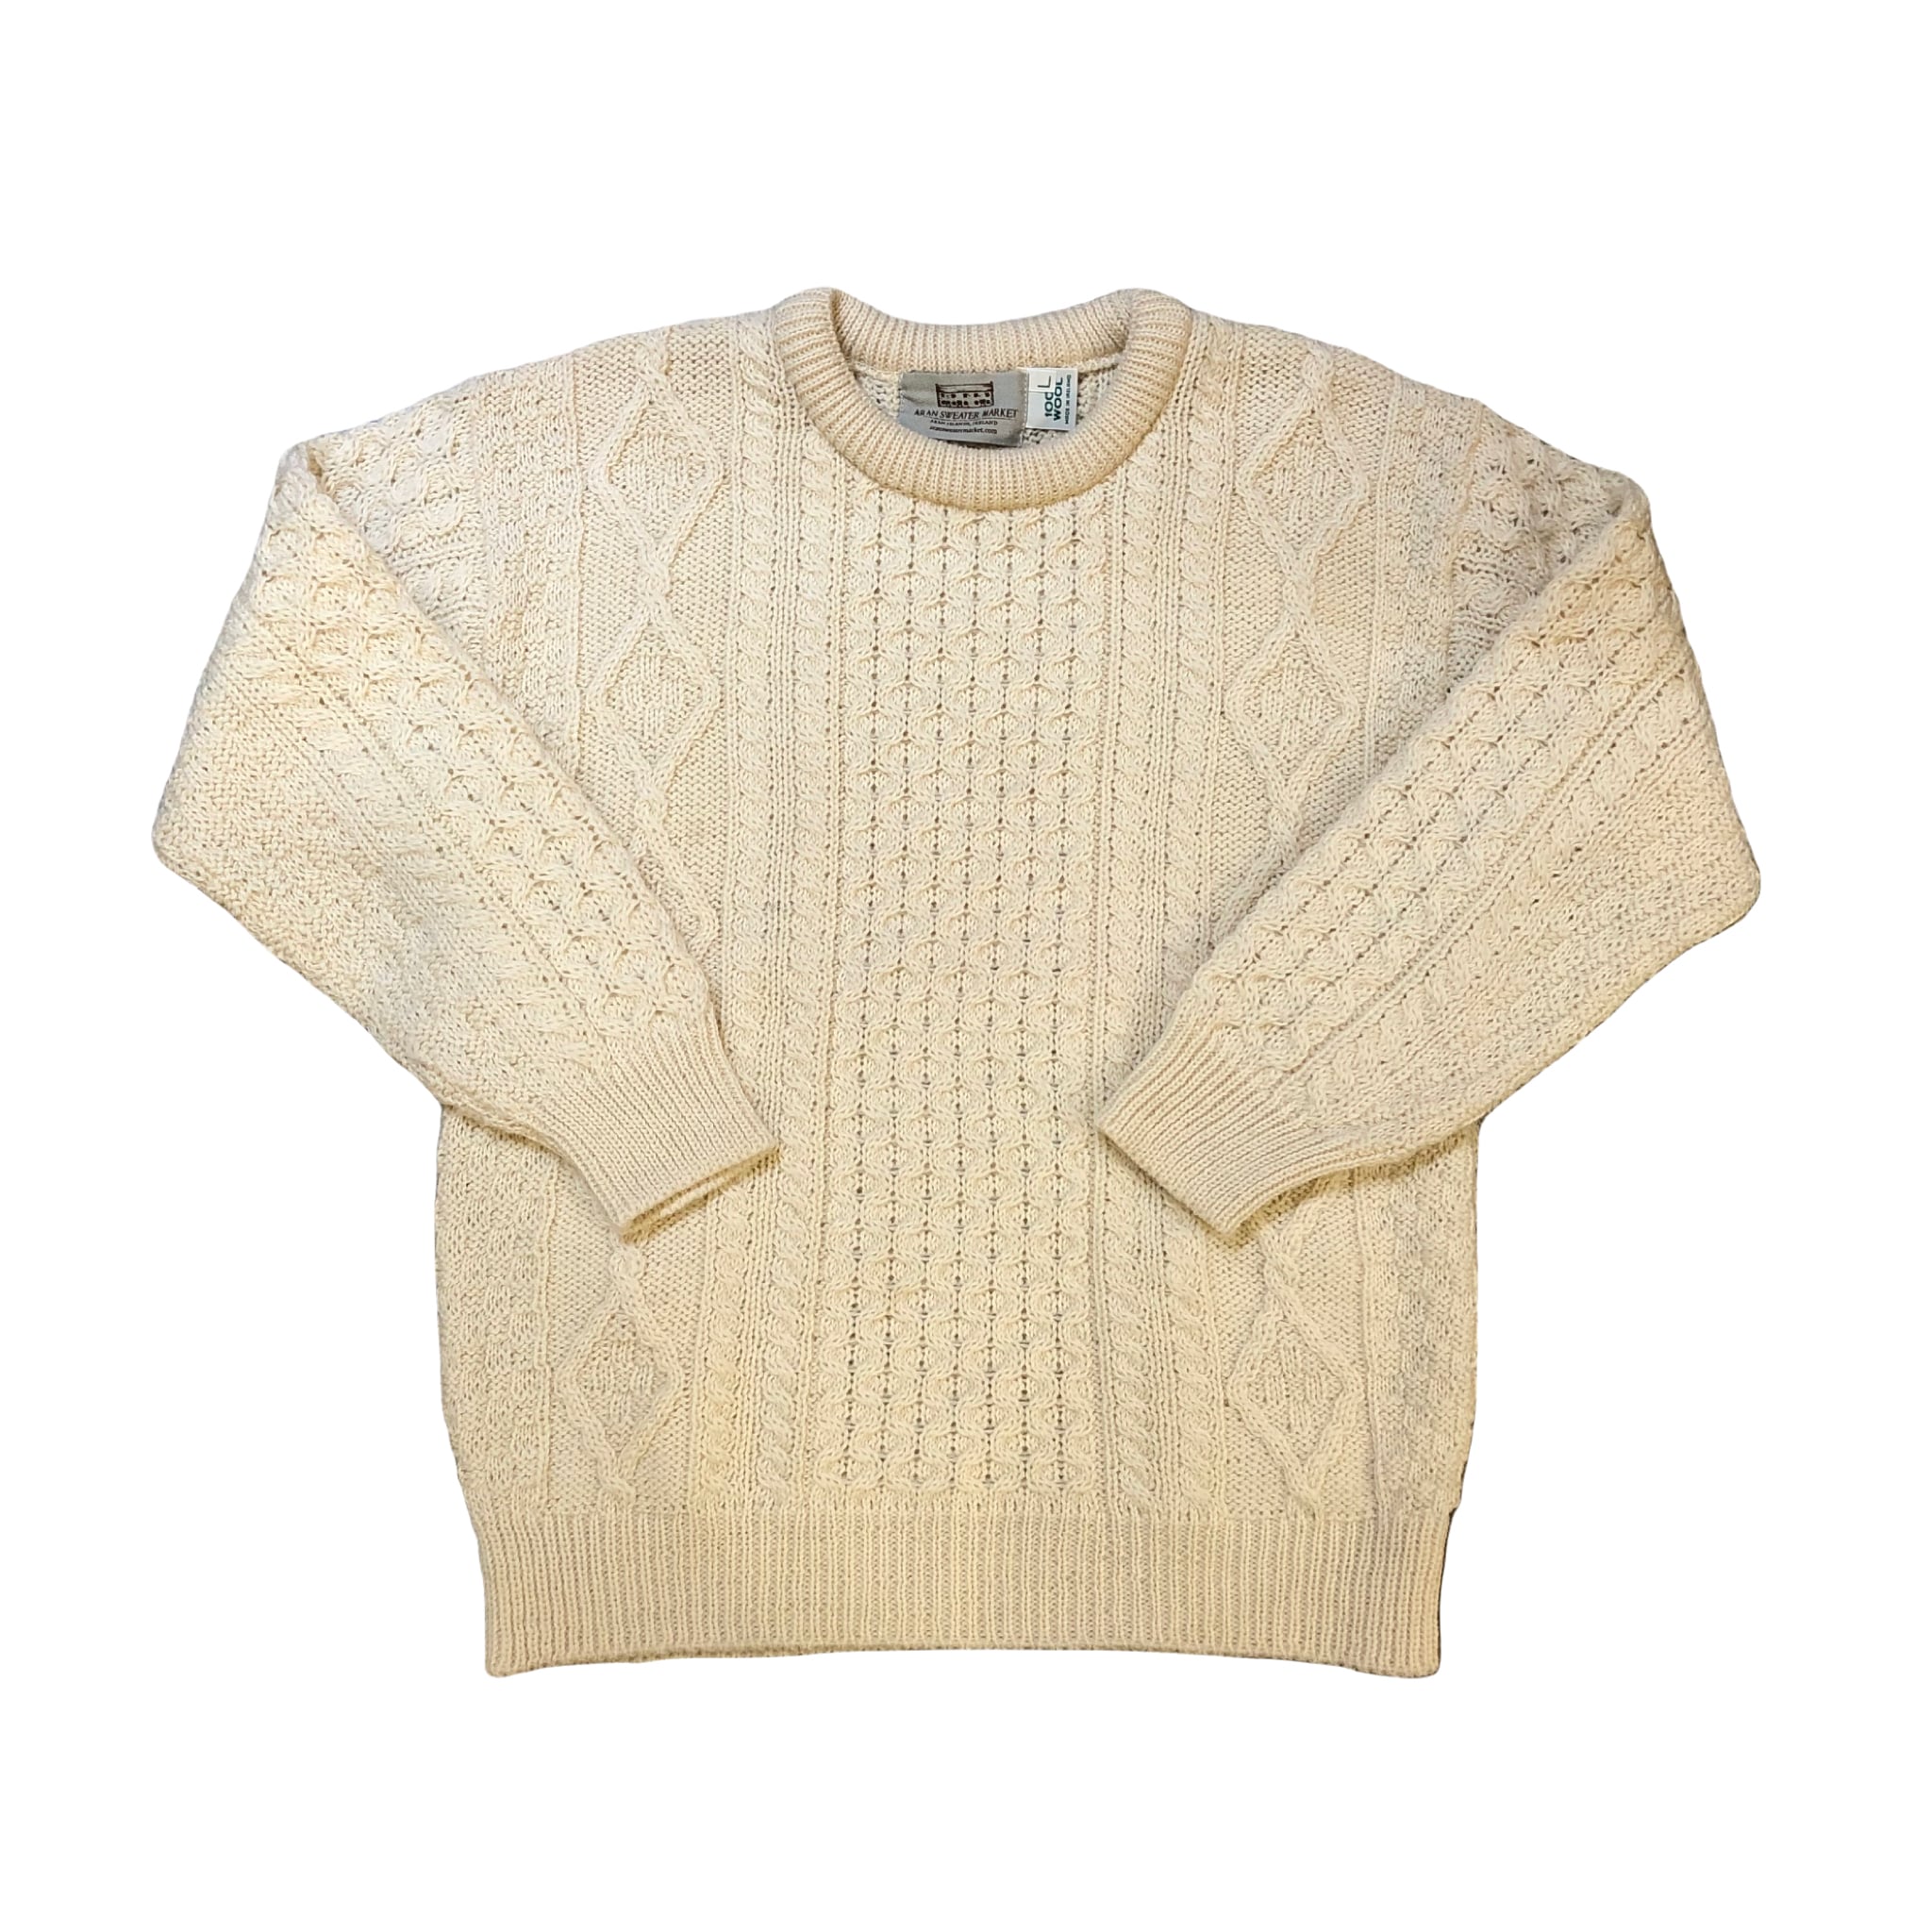 Aran Sweater Market Sweater ¥7,800+tax